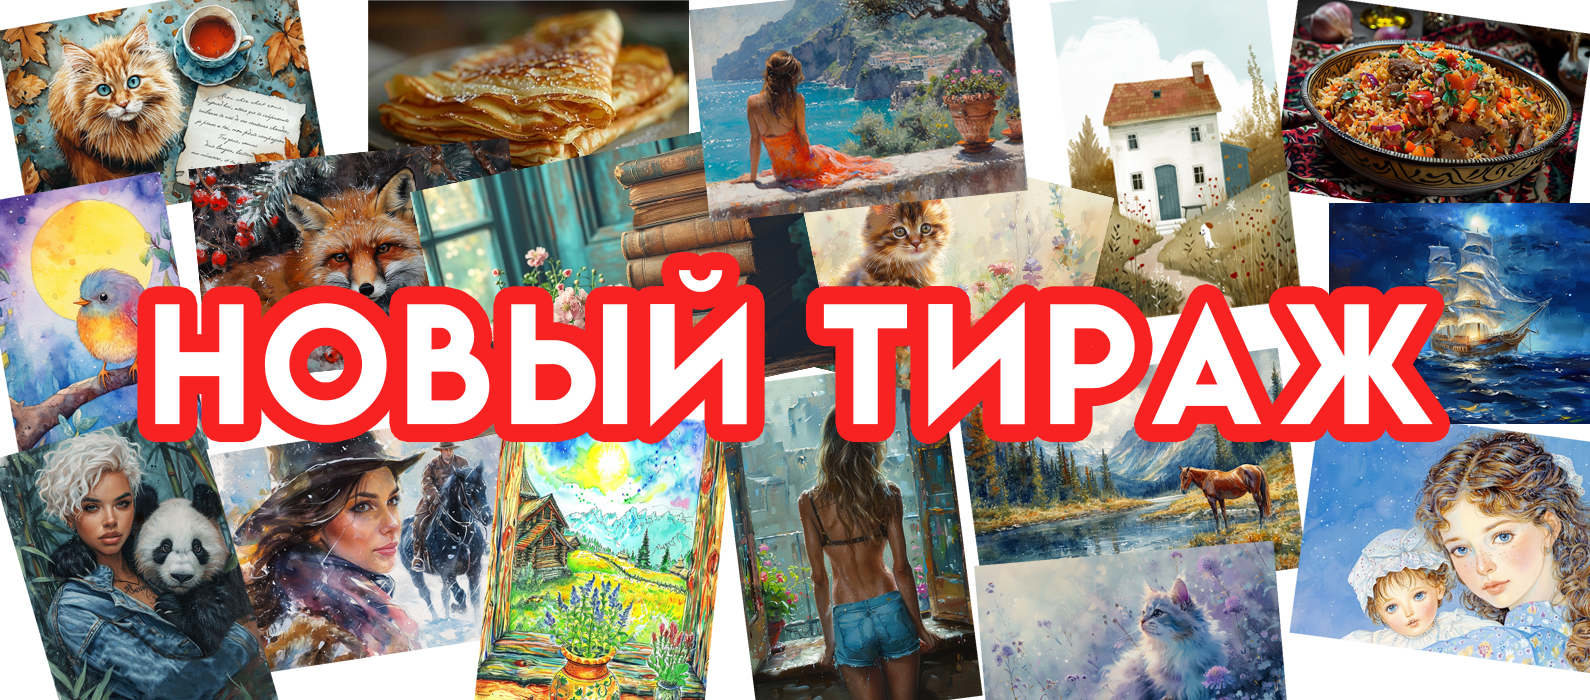 taimyr-expo.ru | Сувениры, открытки для посткроссинга, города России, кружки и многое другое